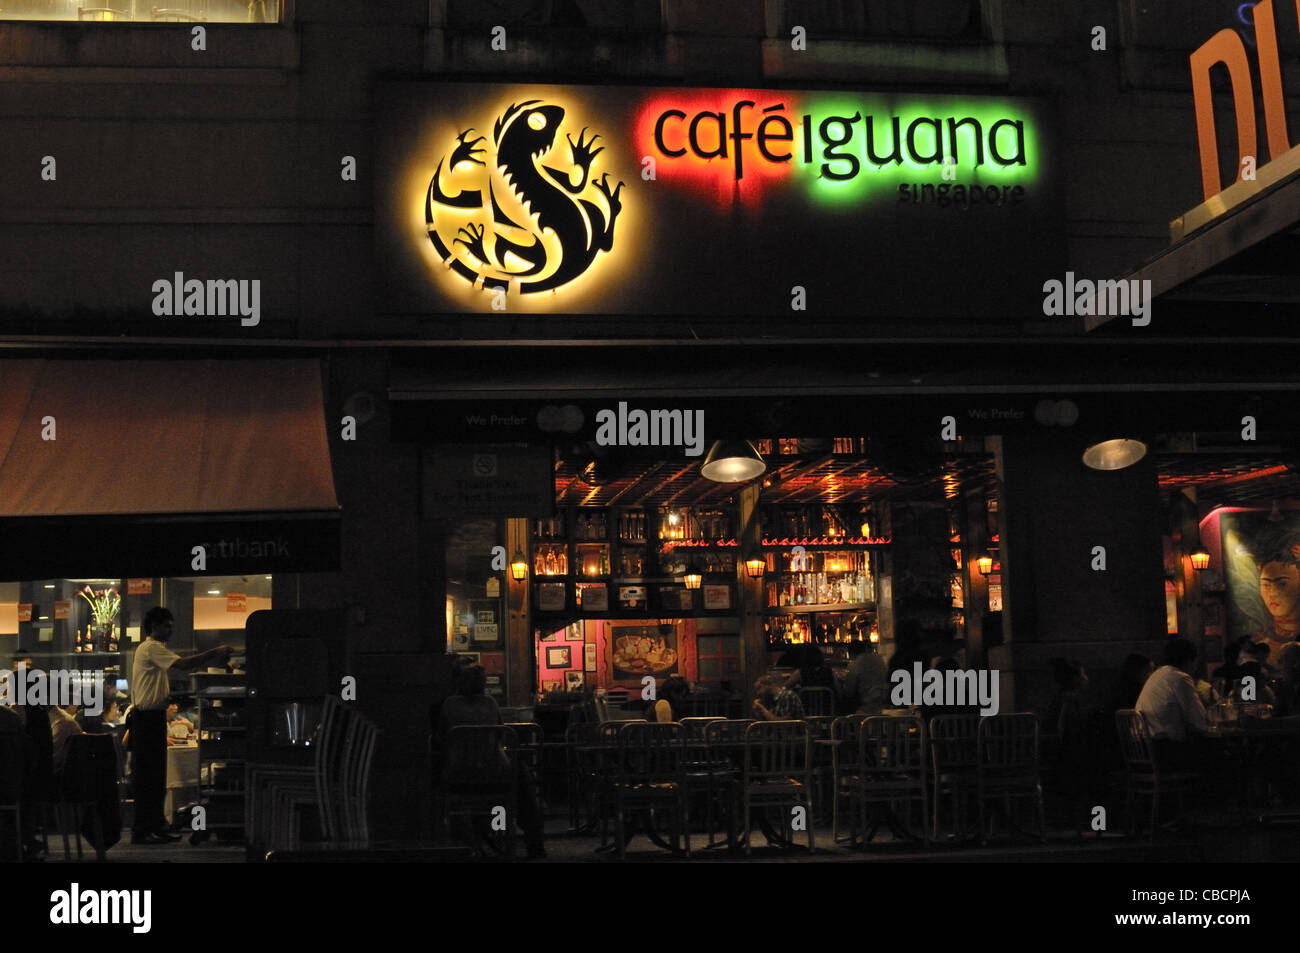 Cafe Iguana at Clarke Quay, Singapore. Stock Photo